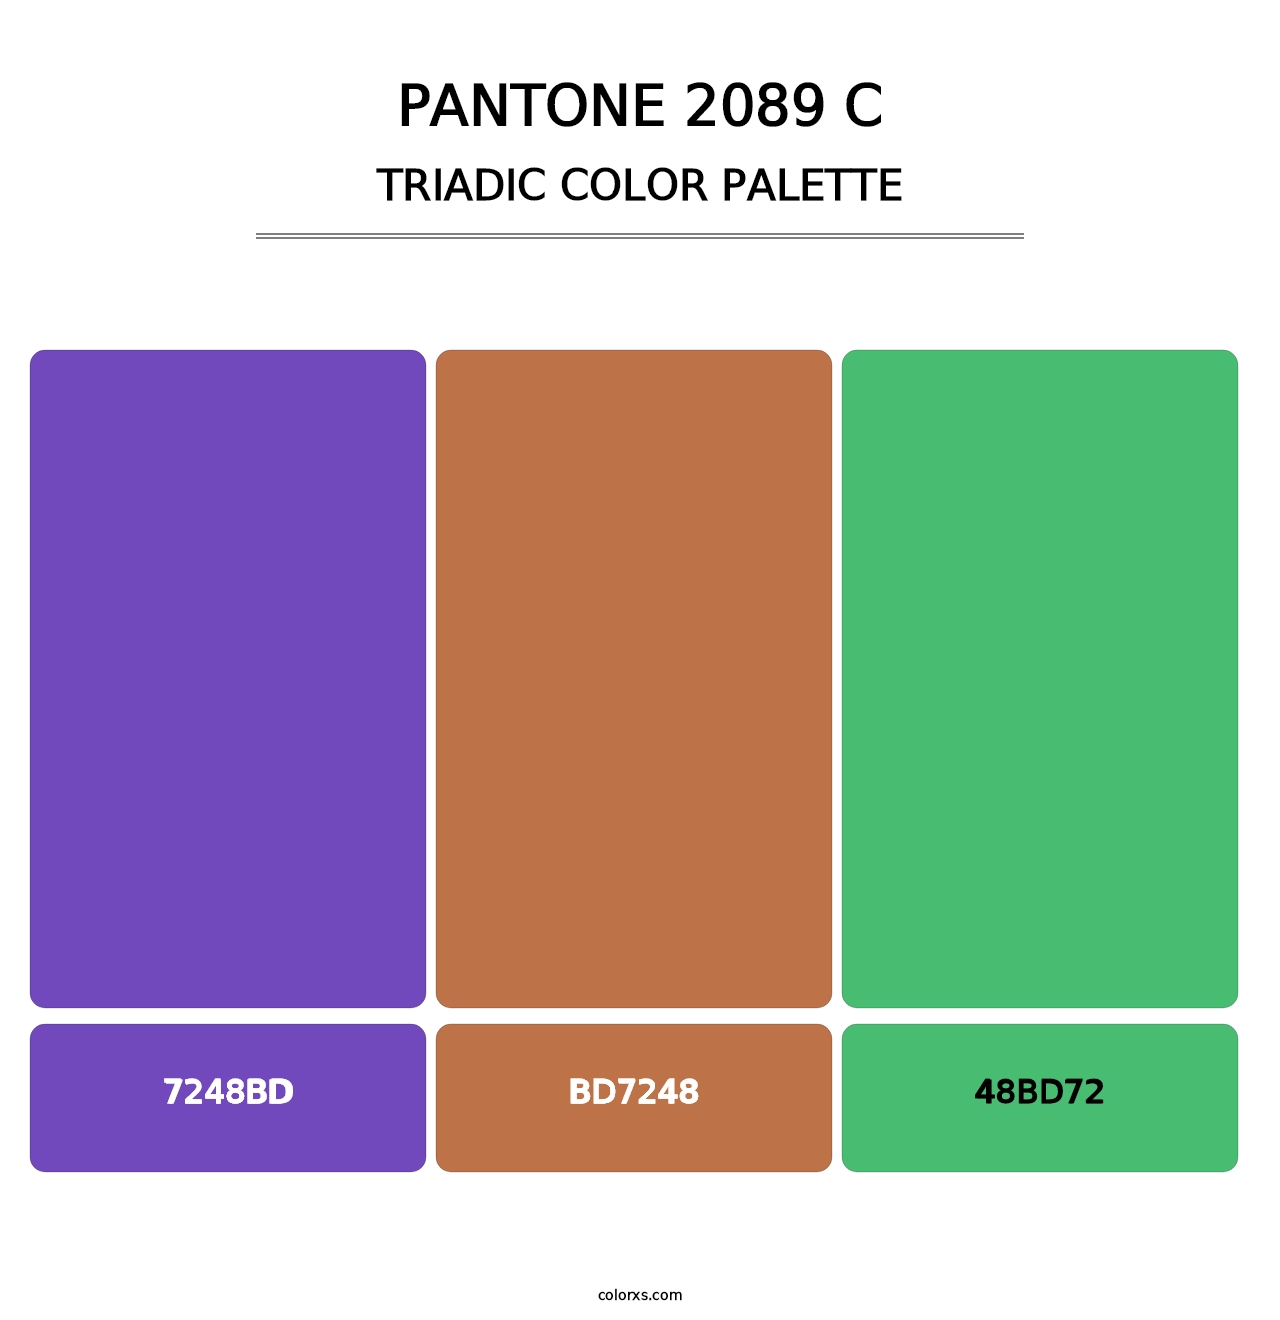 PANTONE 2089 C - Triadic Color Palette